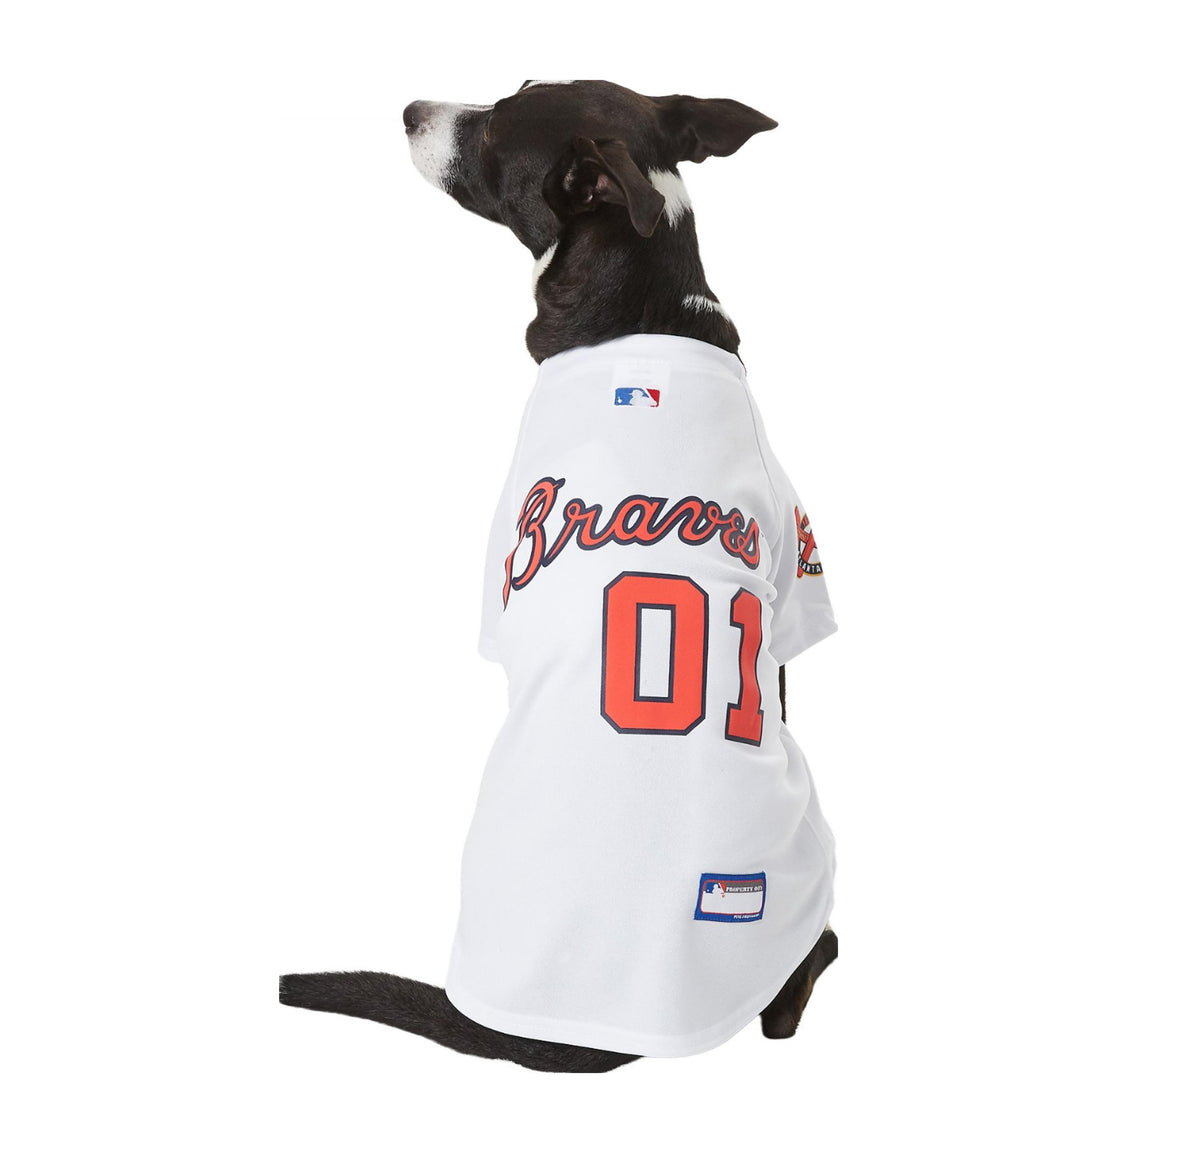 Atlanta Braves MLB Dog Tee Shirt